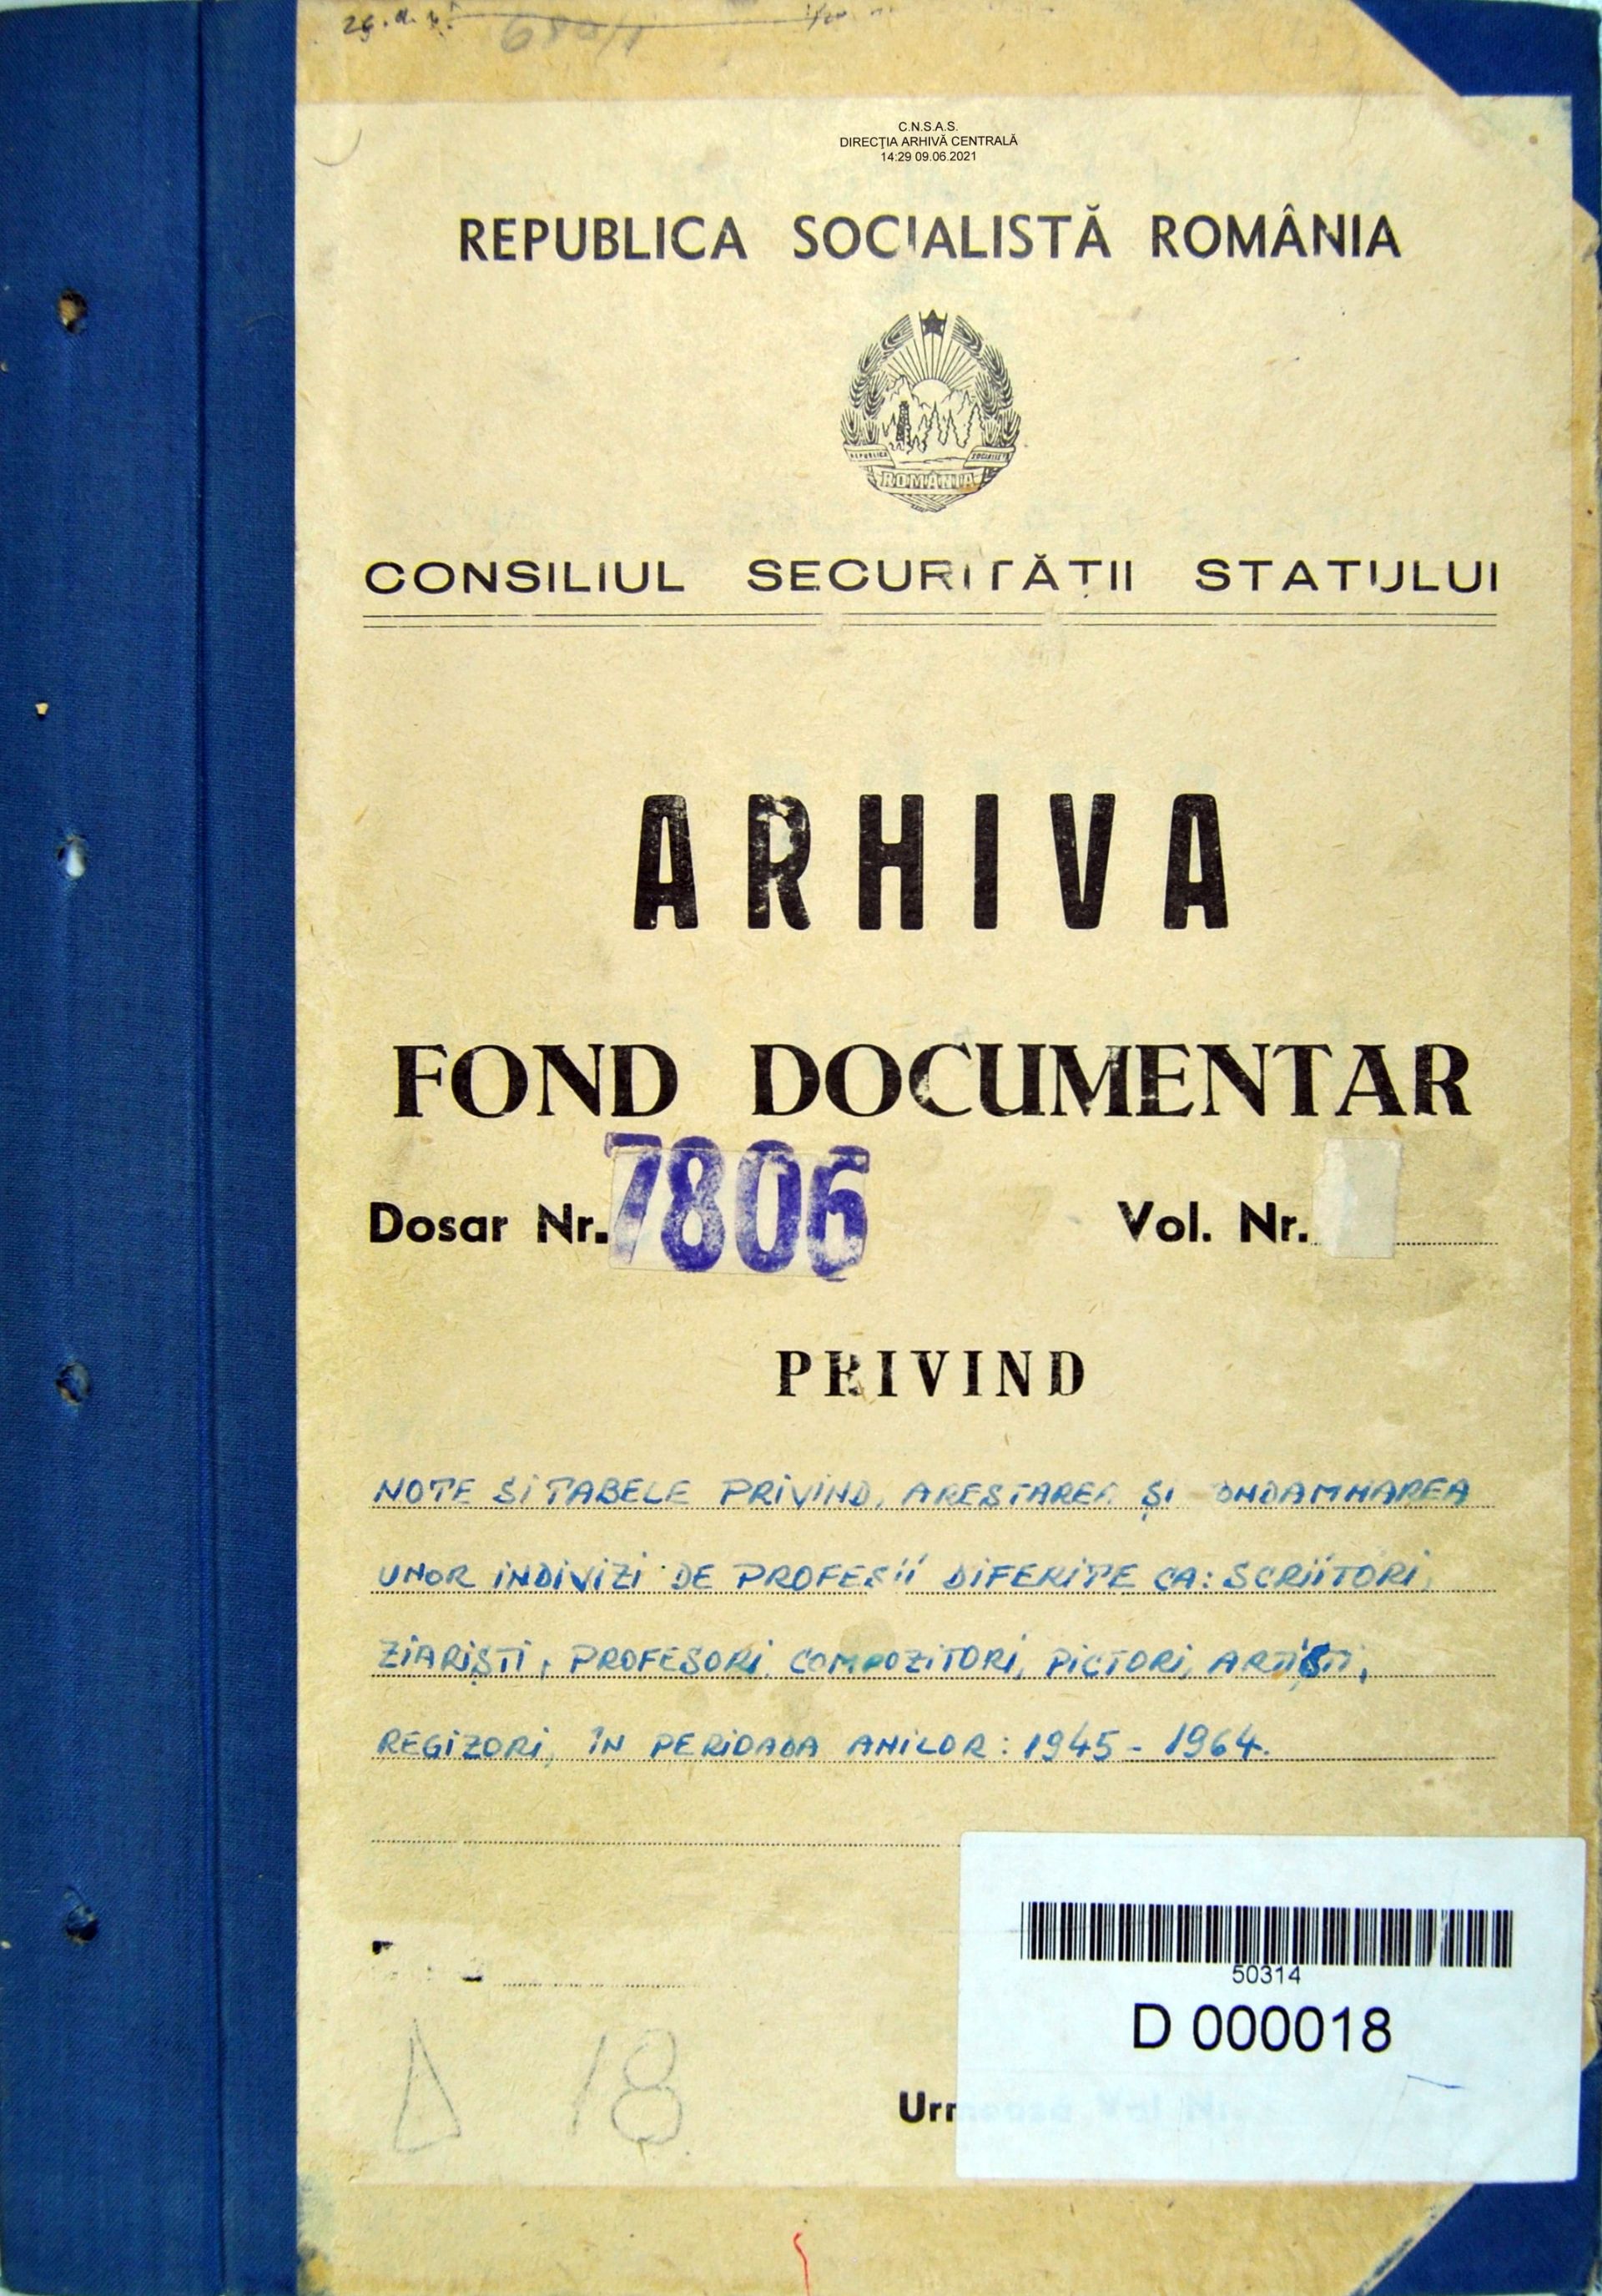 Note si tabele privind arestarea si condamanarea unor indivizi, pictori, artisti, regizori in perioada 1945-1964